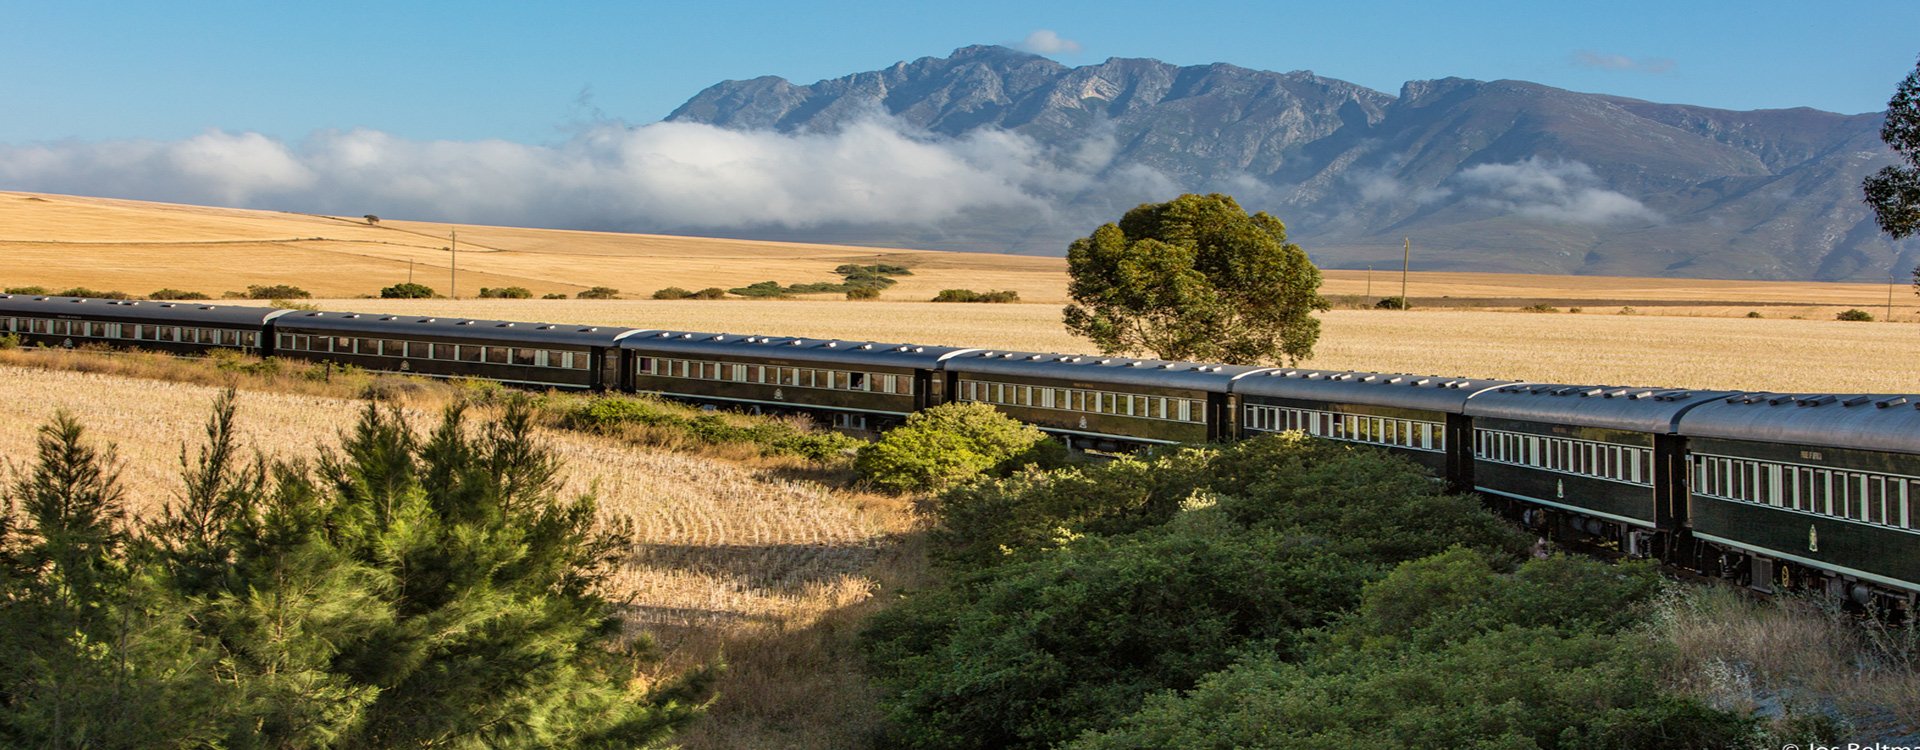 Cape Town_Rovos Rail_Mountain View